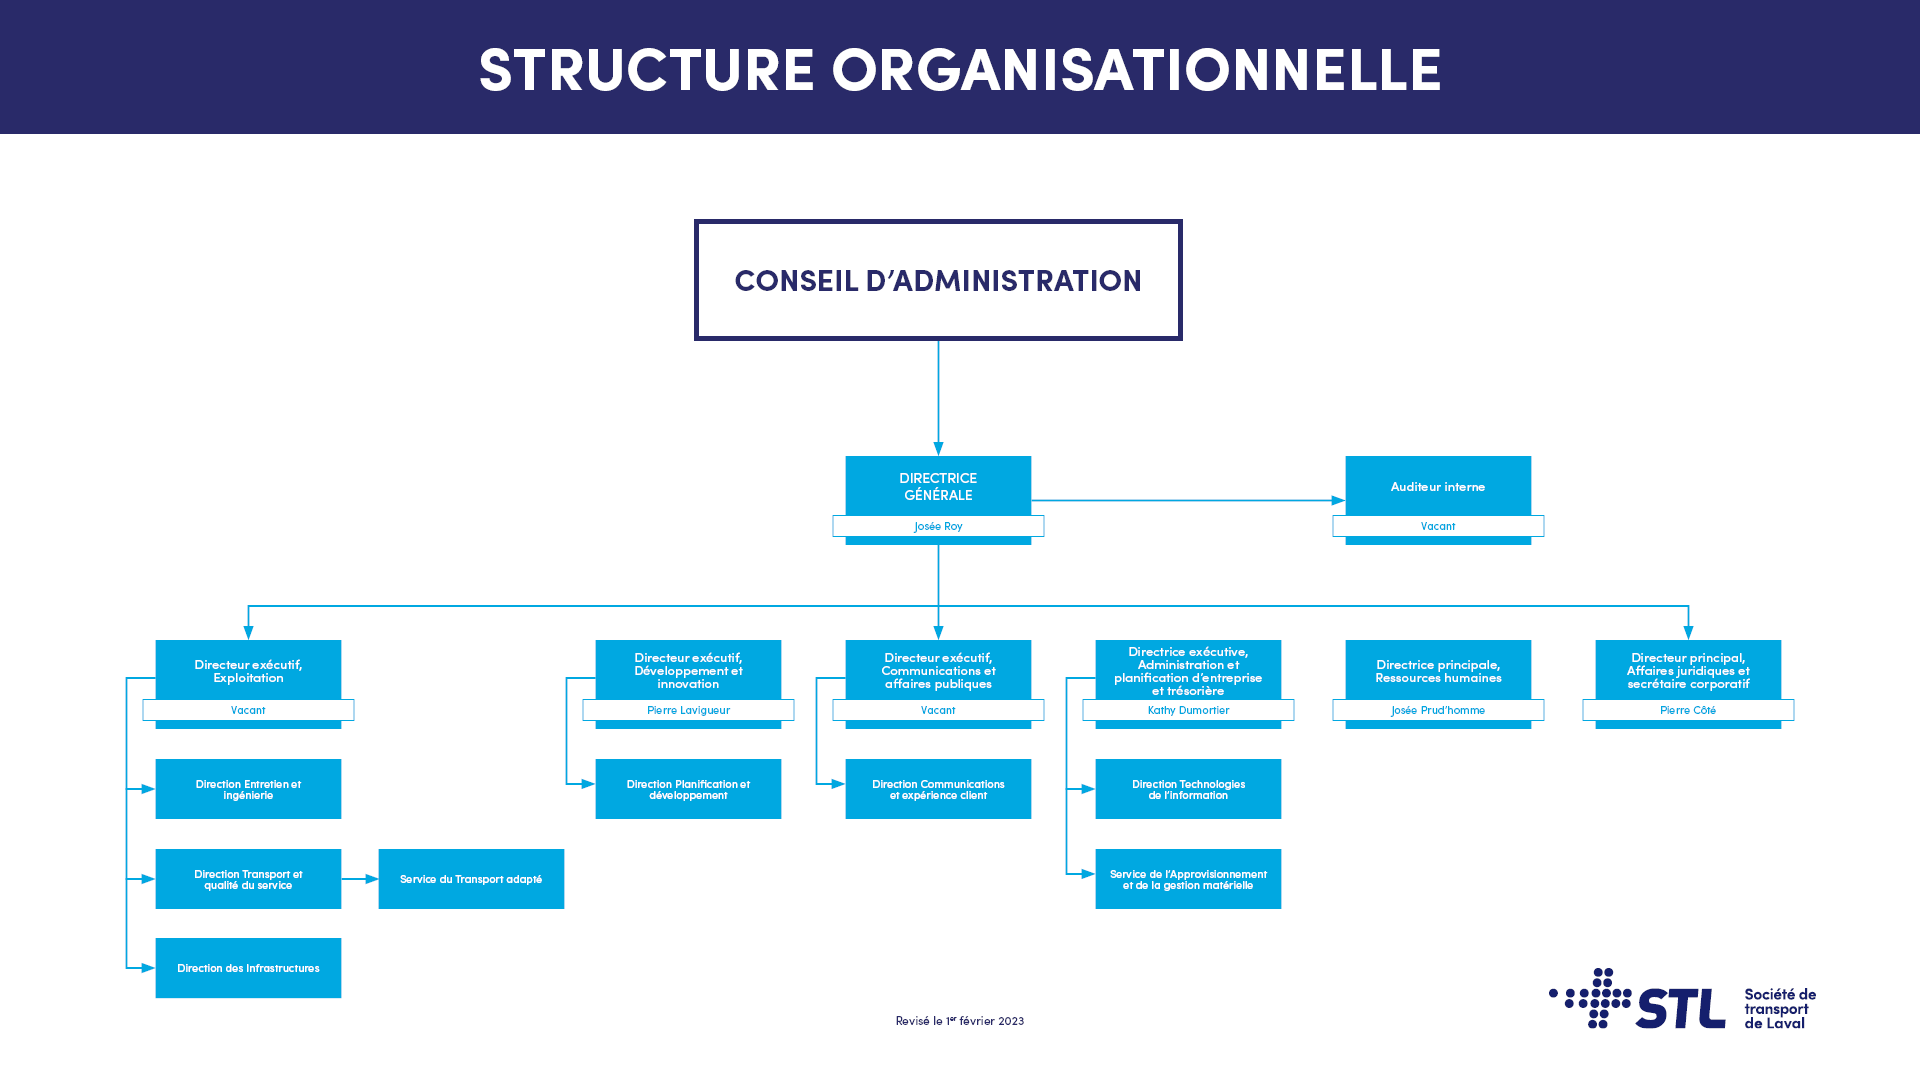 Structure organisationnelle de la STL (20 décembre 2022)